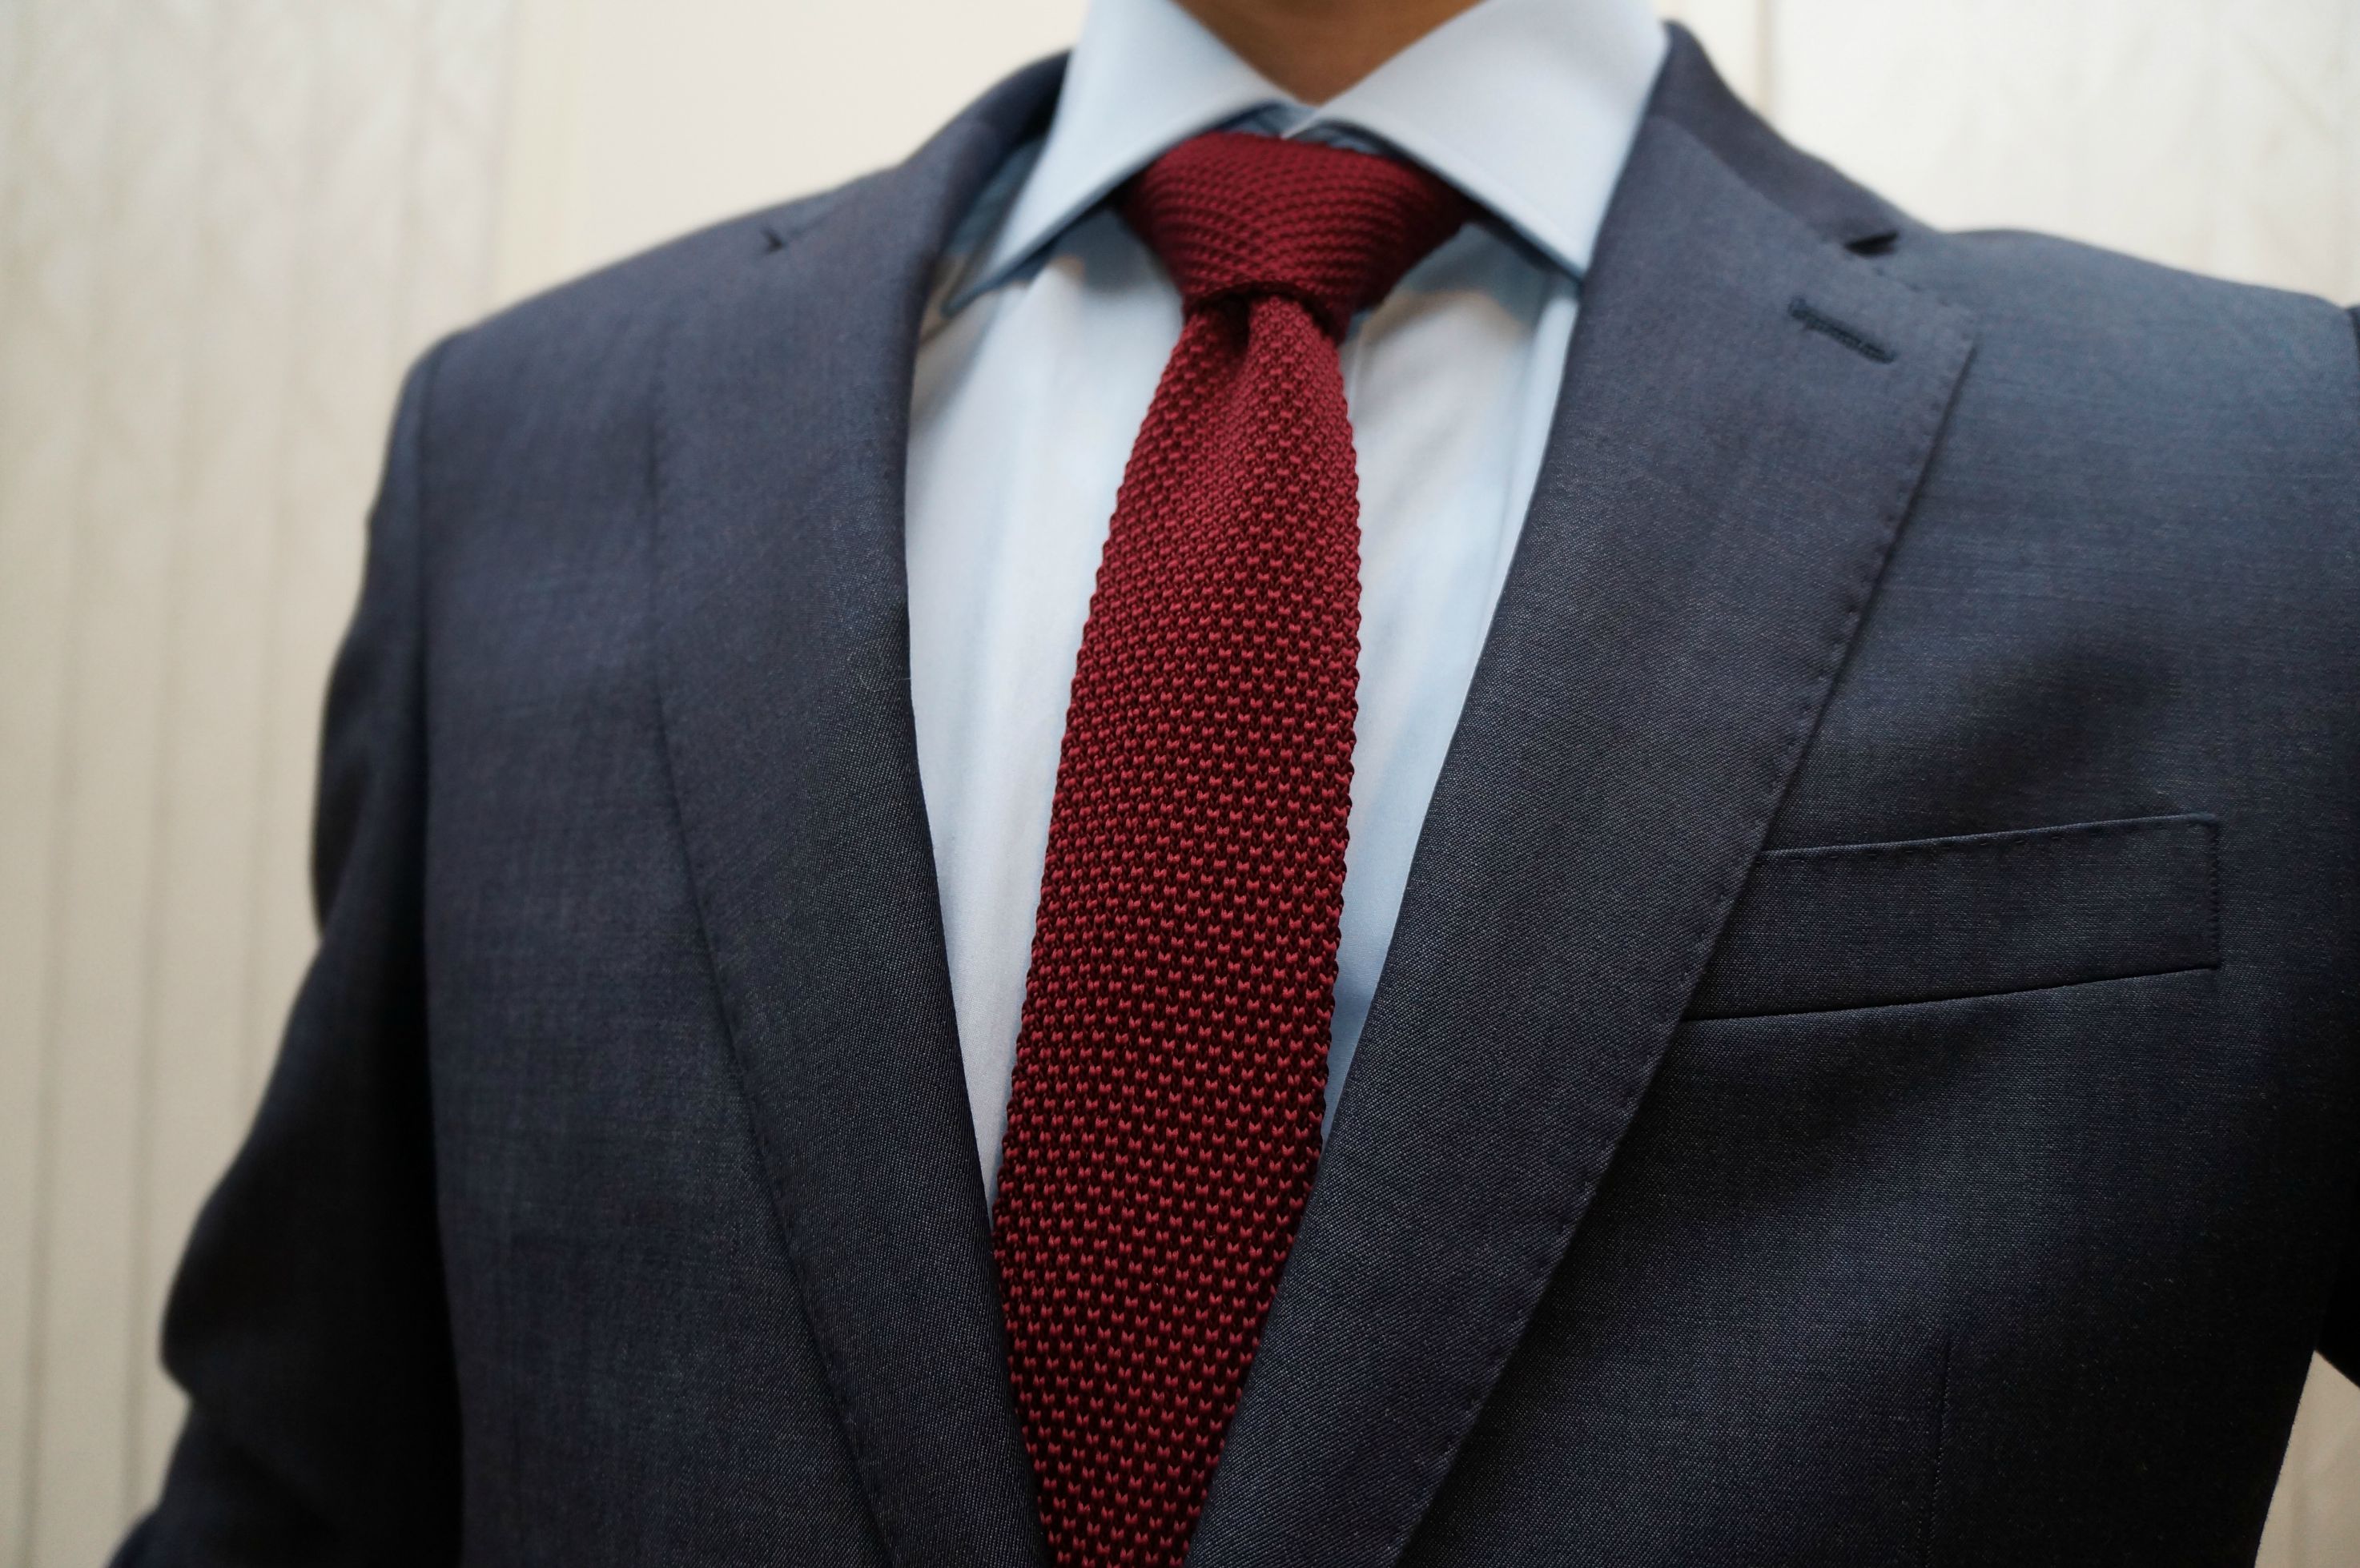 Men's Suit, Tie & Shirt Color Combinations Guide - Suits Expert